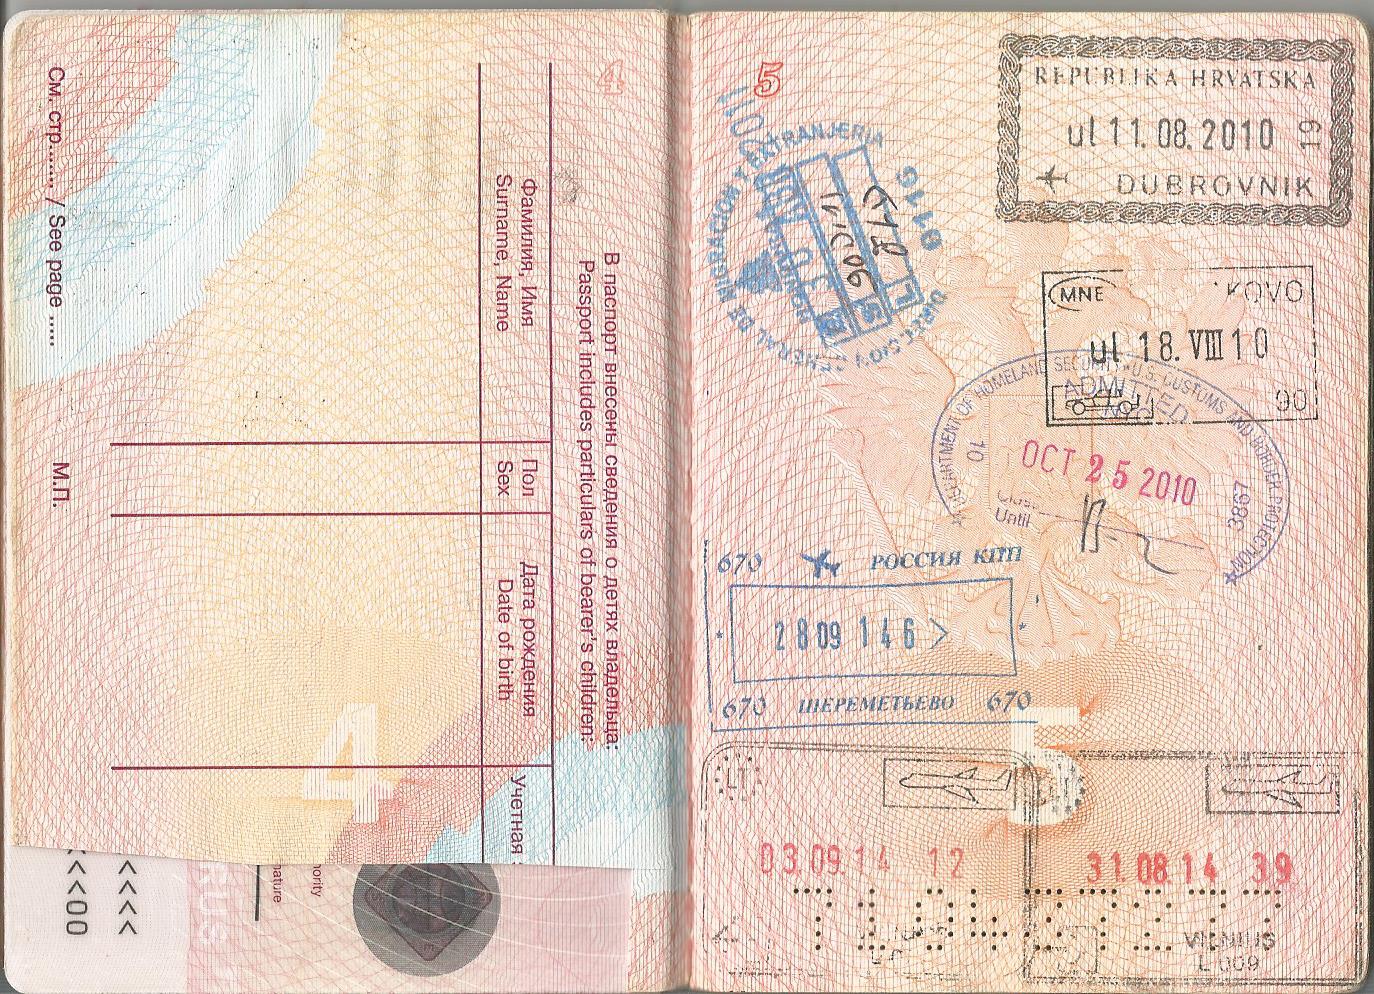 Как перенести визу в новый загранпаспорт